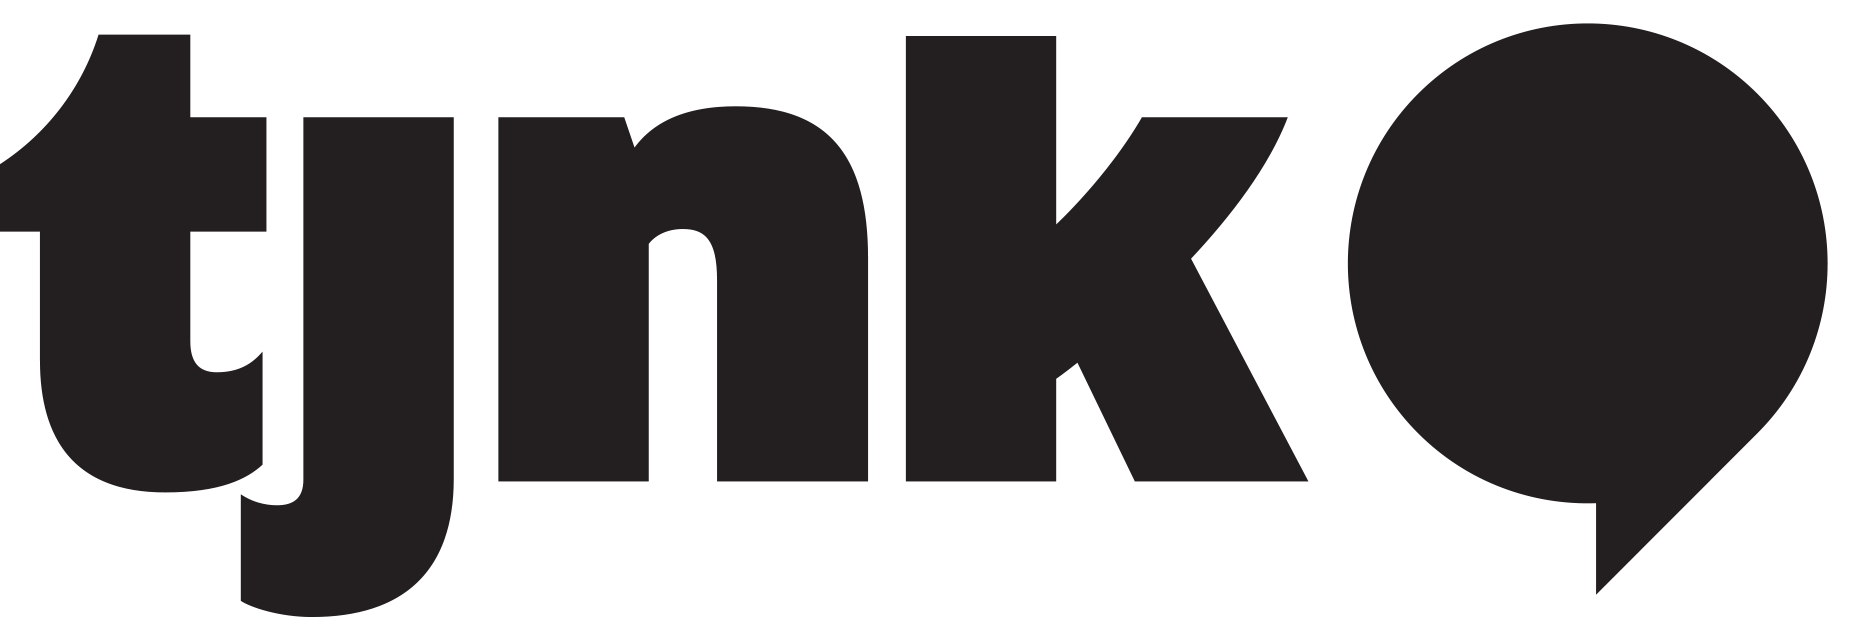 TJNK logo.